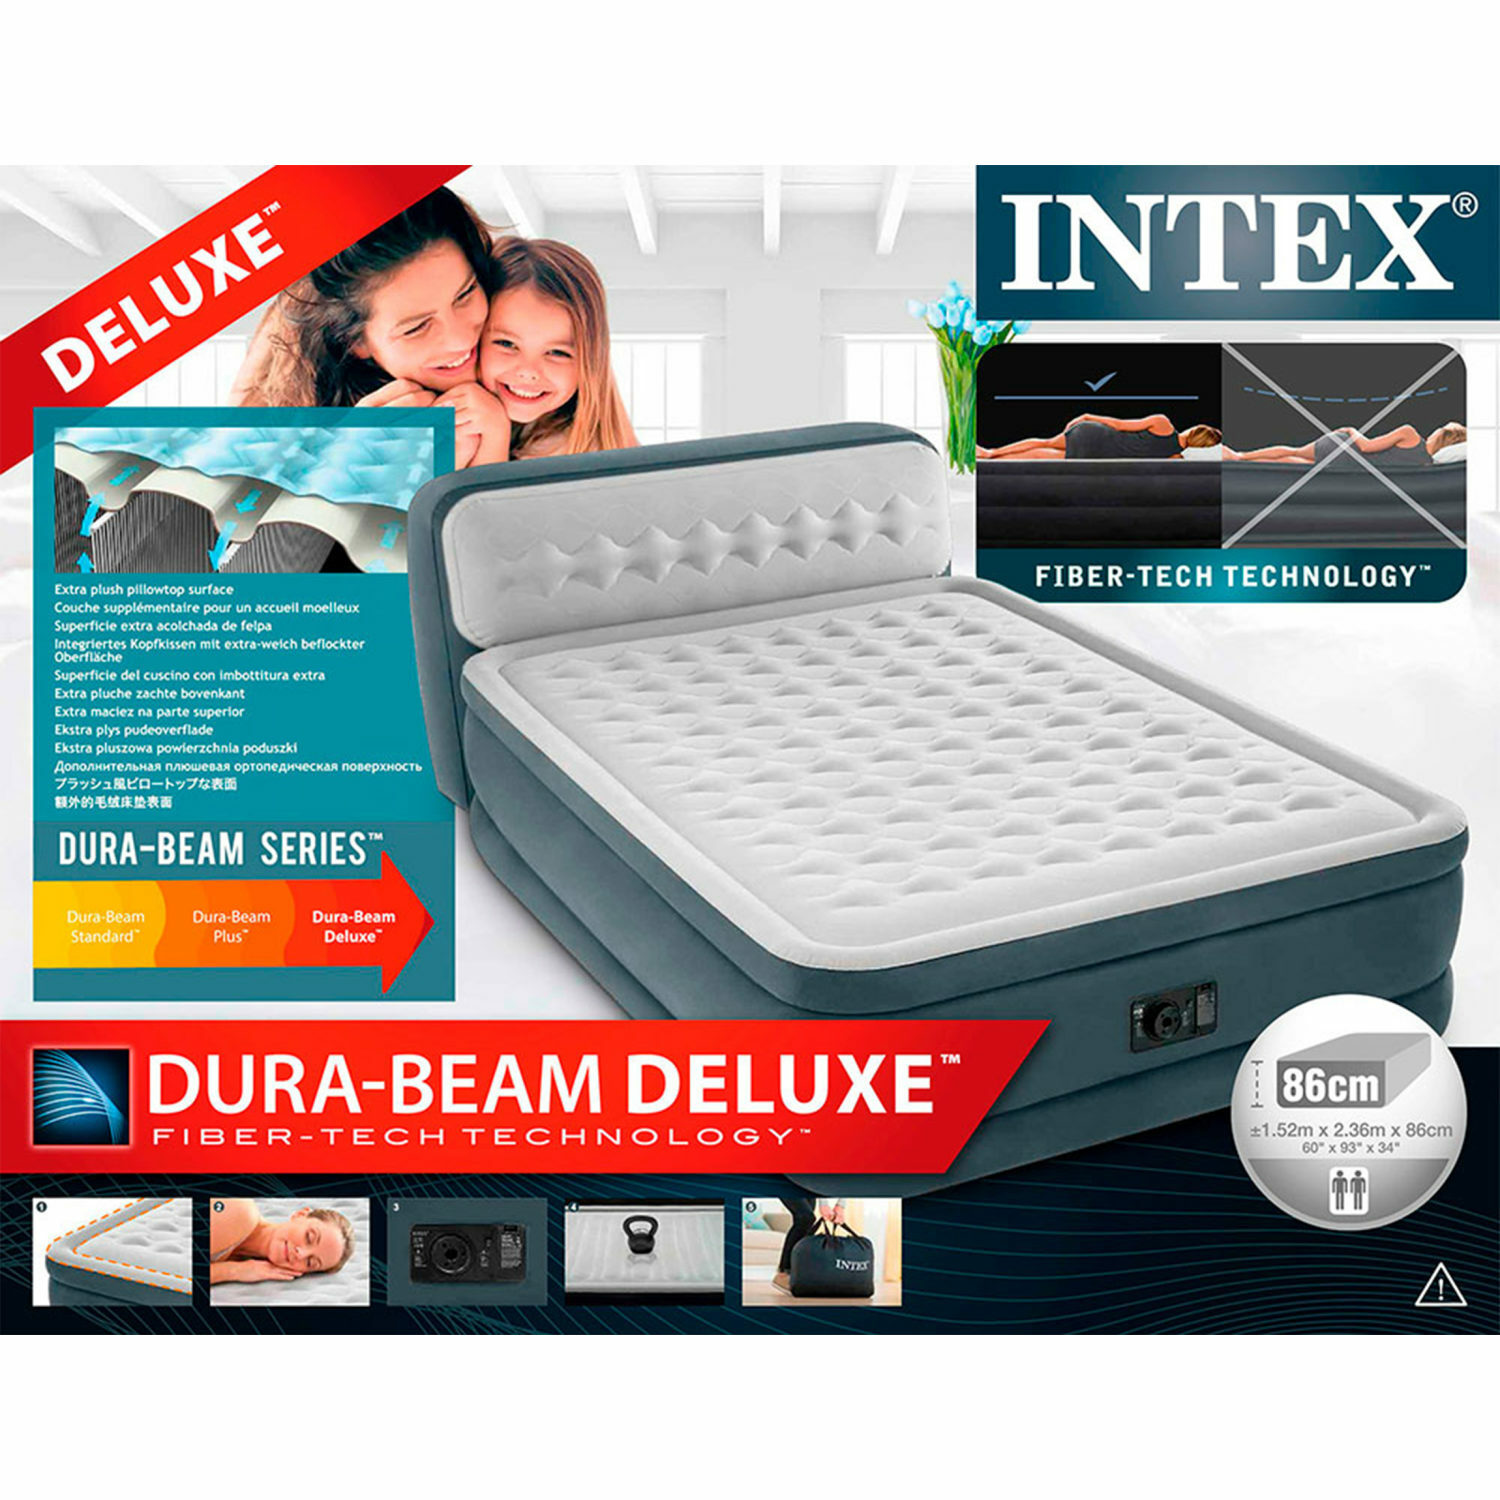 Надувной матрас INTEX кровать с высоким подголовником и встроенным насосом 152х236х86 см - фото 6